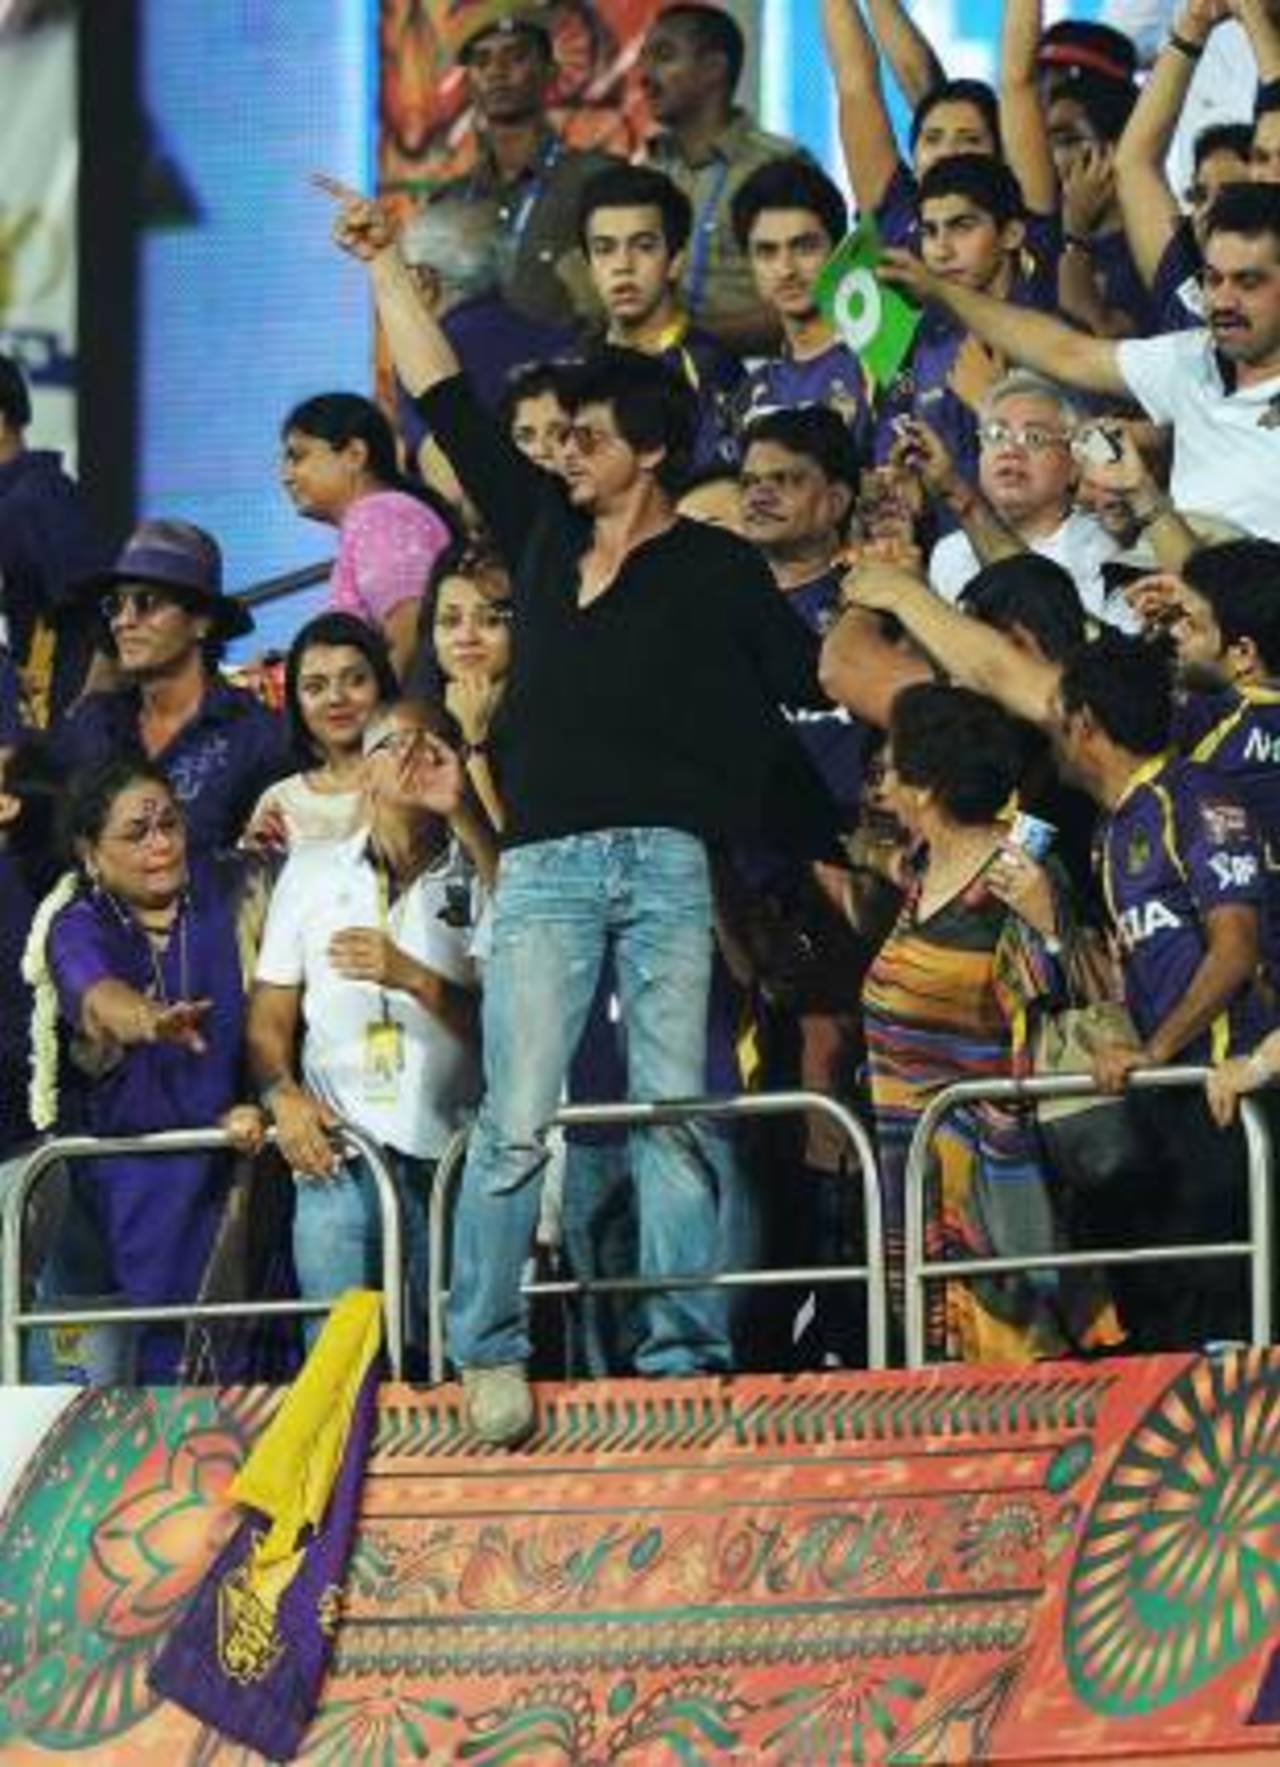 Shah Rukh Khan: he'll cross the line for his friends&nbsp;&nbsp;&bull;&nbsp;&nbsp;AFP